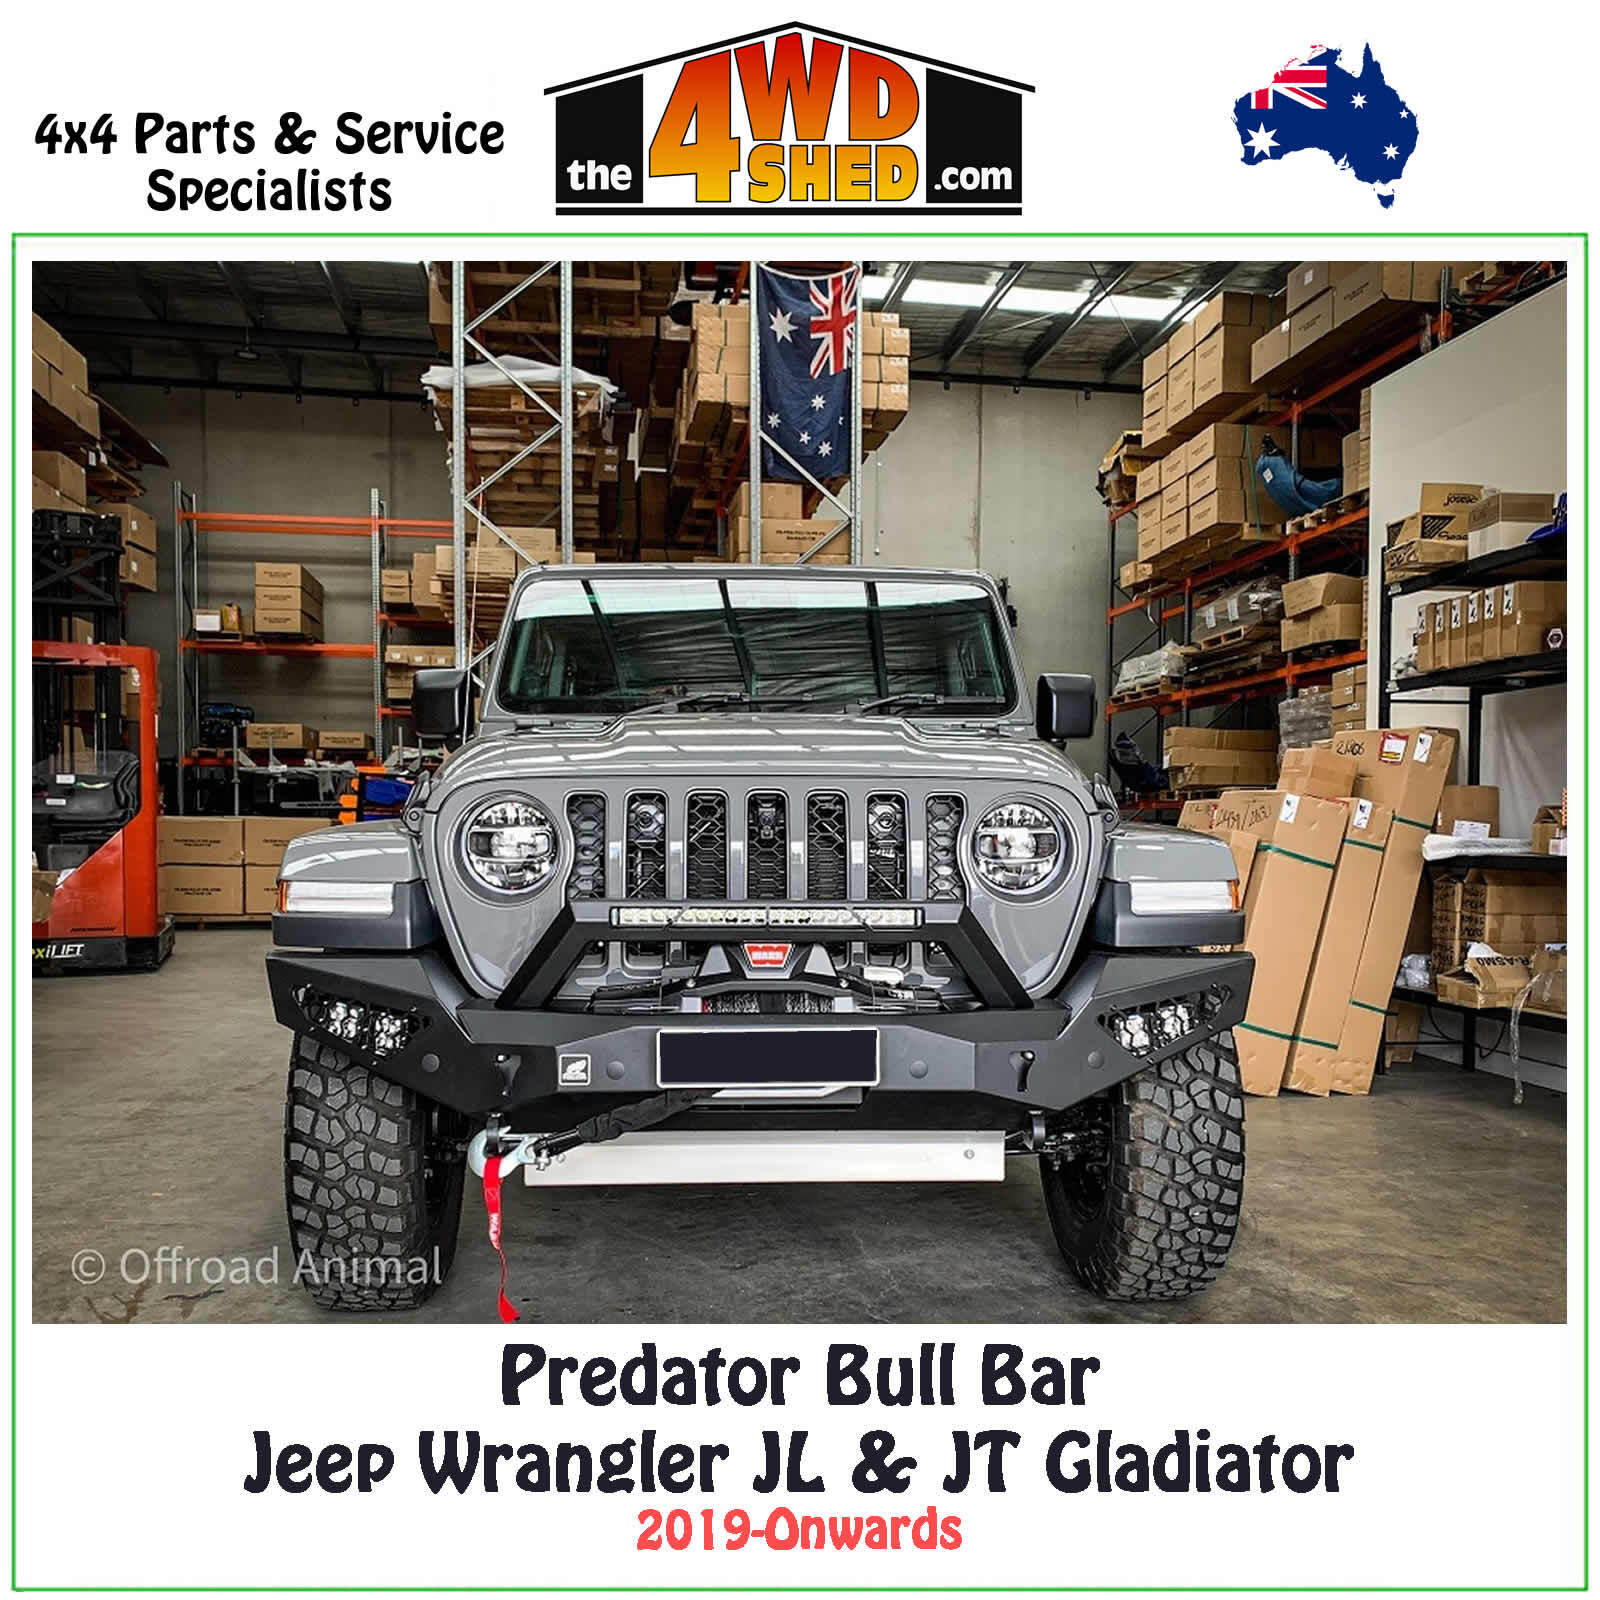 Predator Bull Bar Jeep Wrangler JL & JT Gladiator